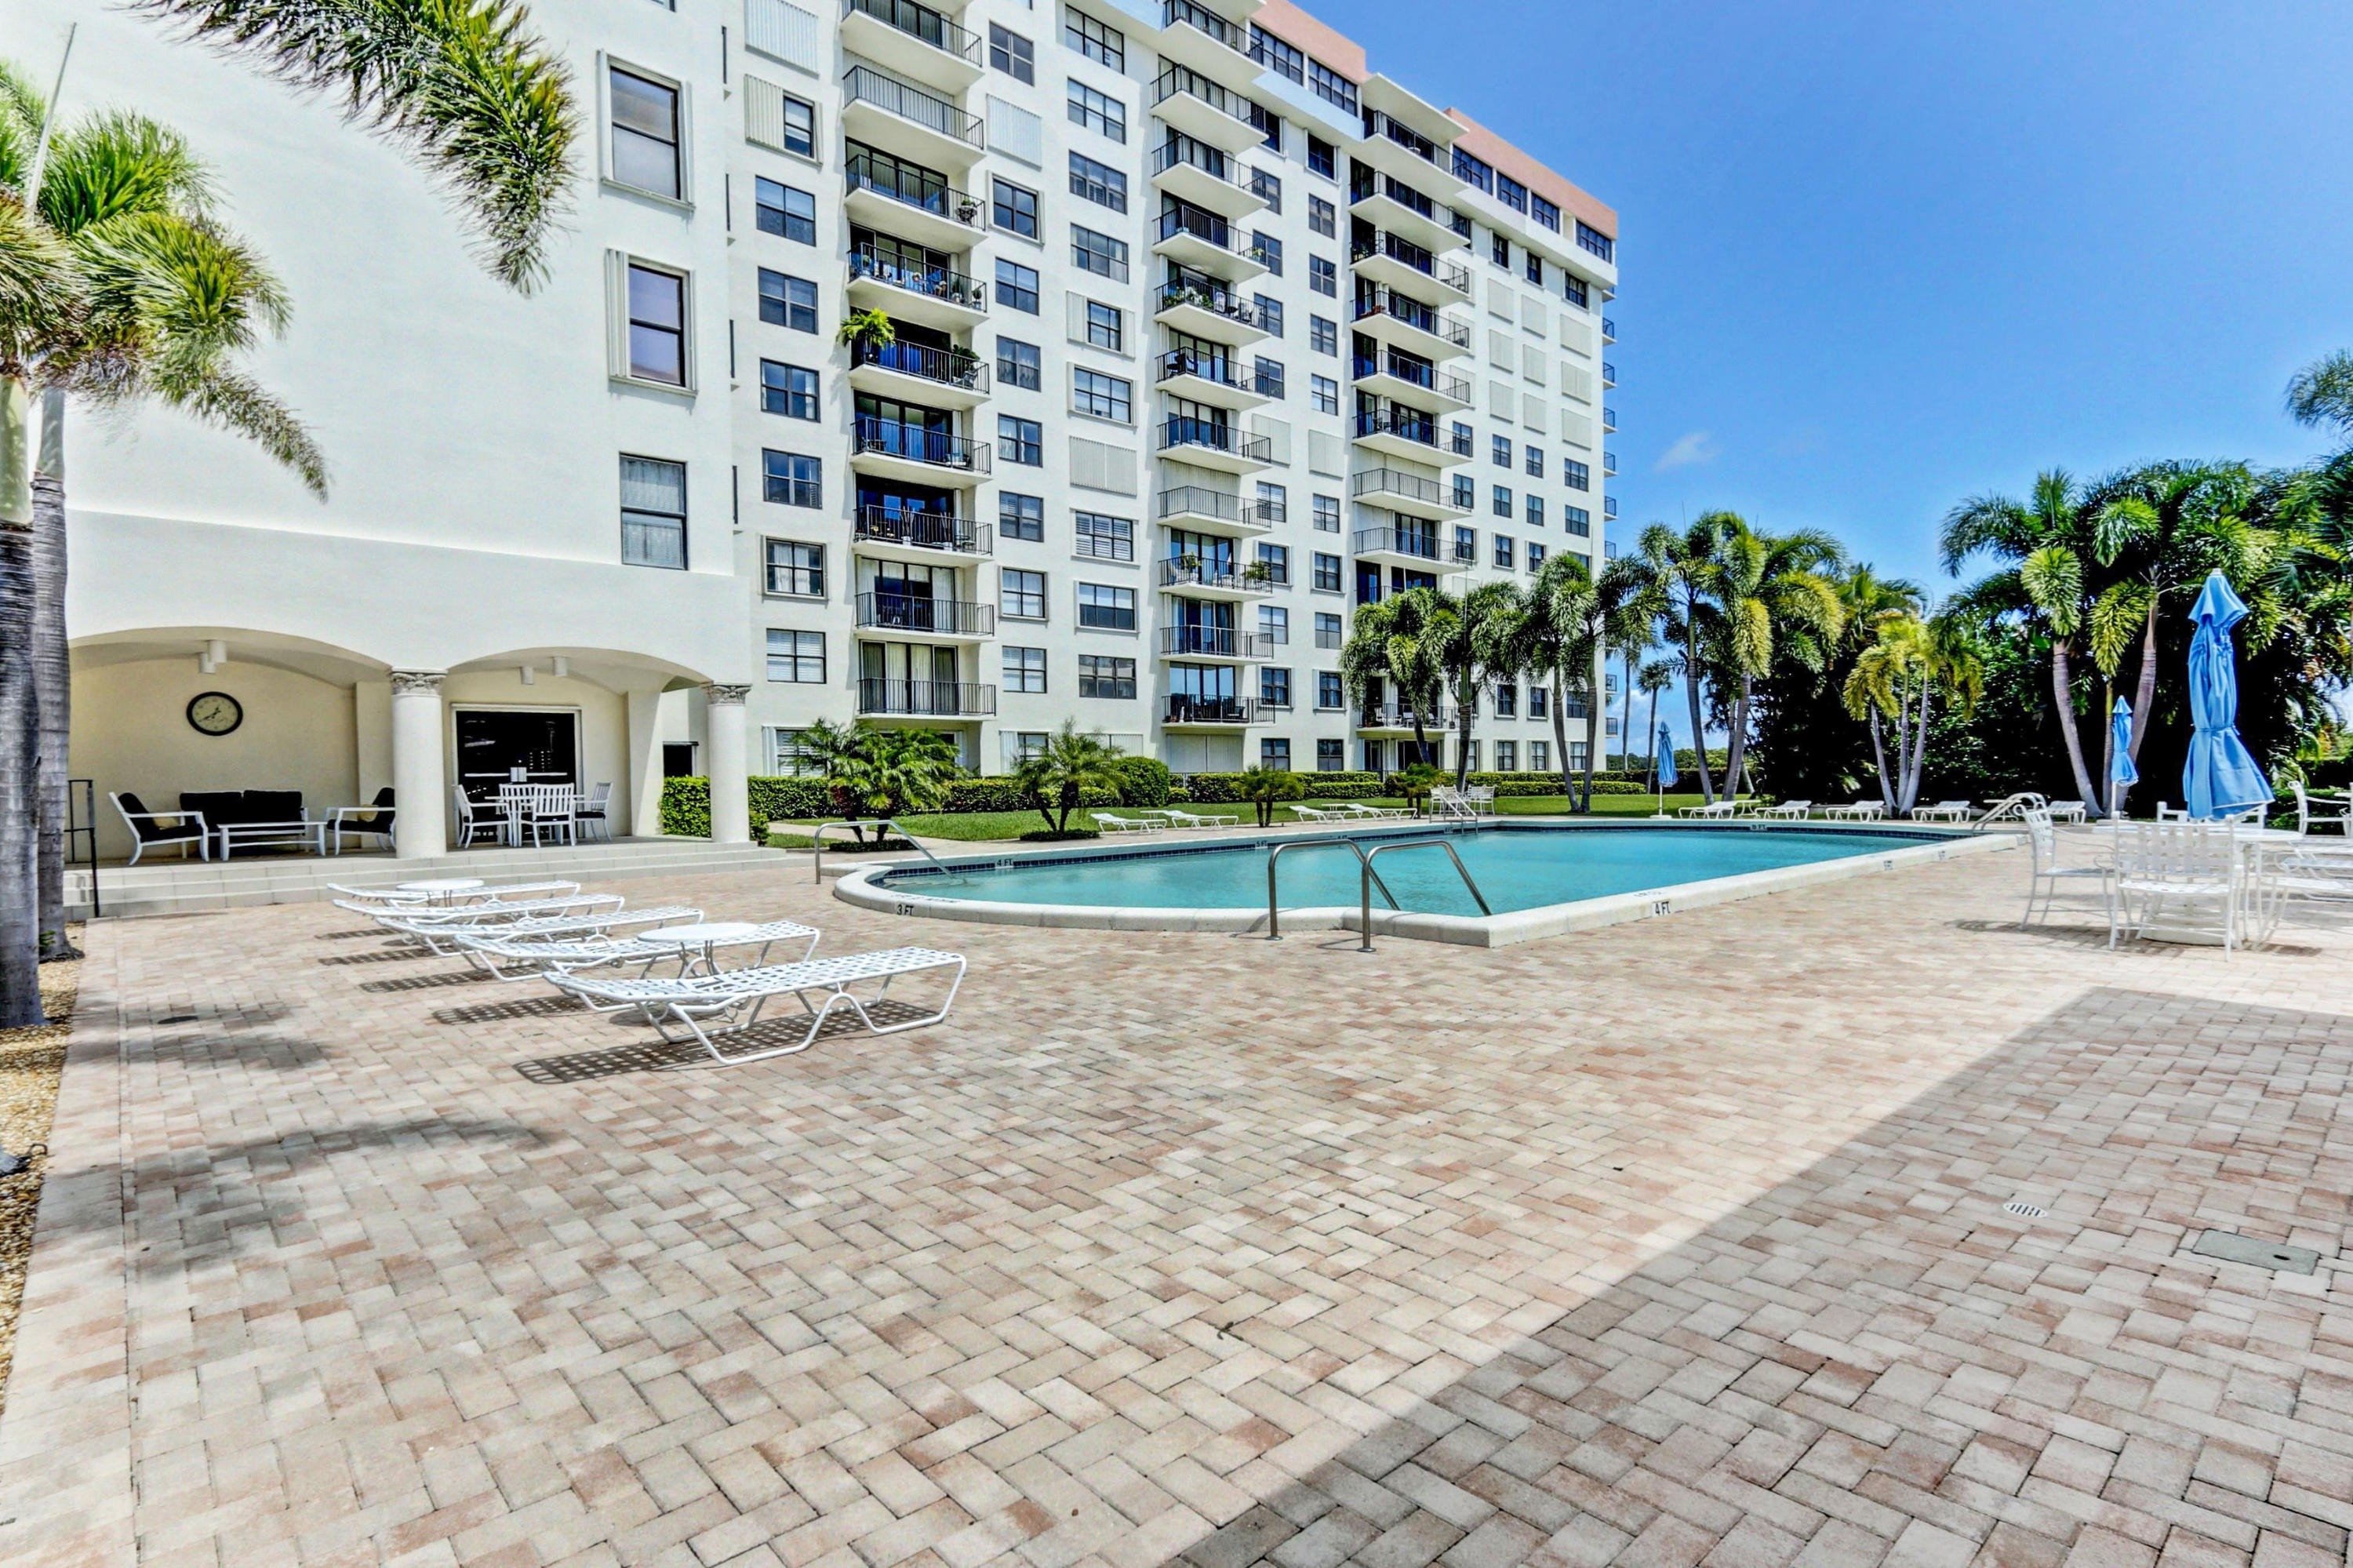 20. Condominiums at 3800 Washington Road, 412 West Palm Beach